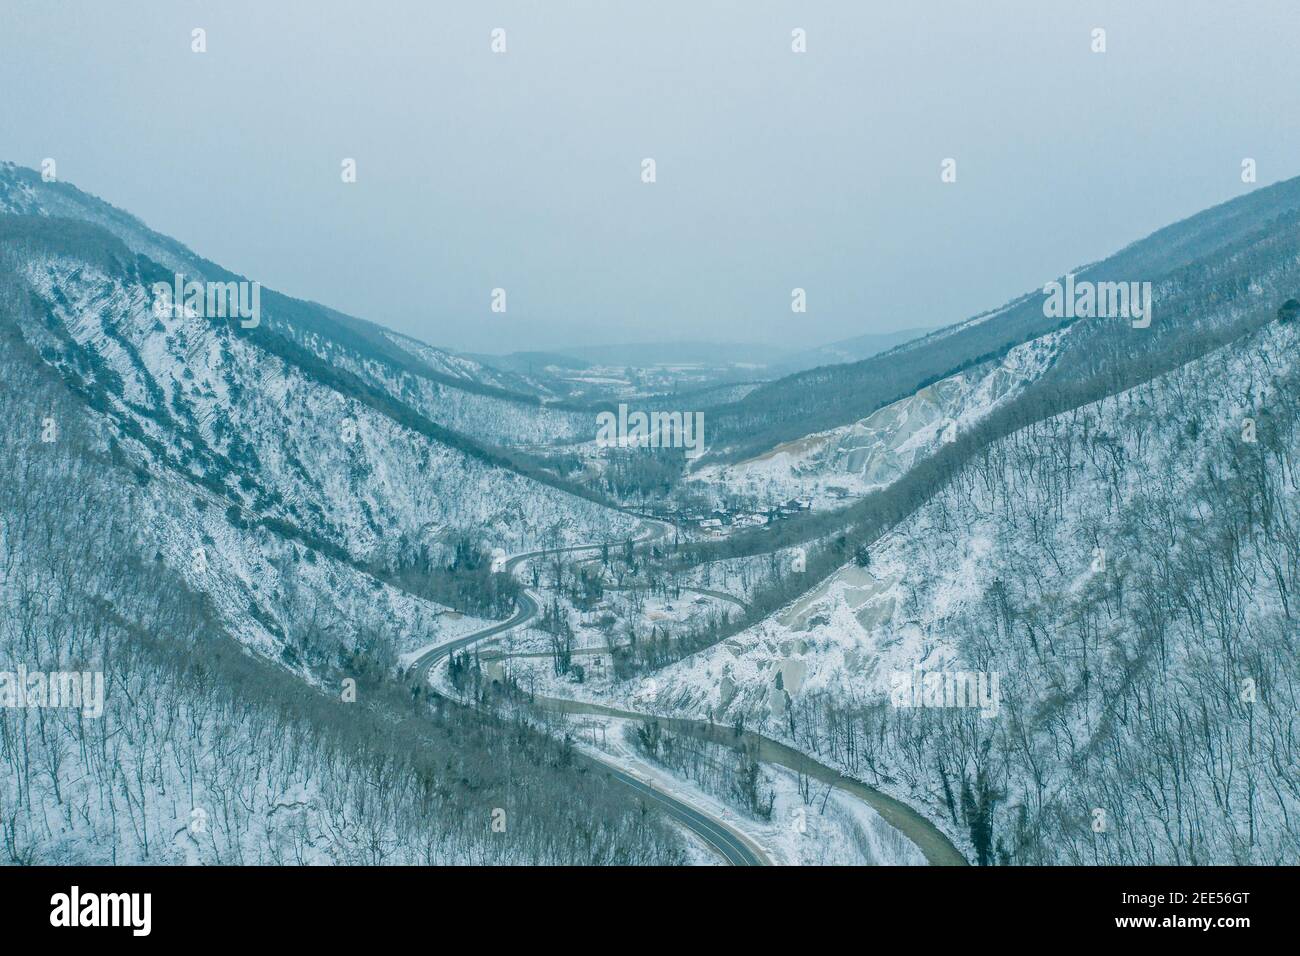 Vista aerea dal drone sopra la gola di montagna tra le vette in inverno in tempo nevoso. Foto Stock